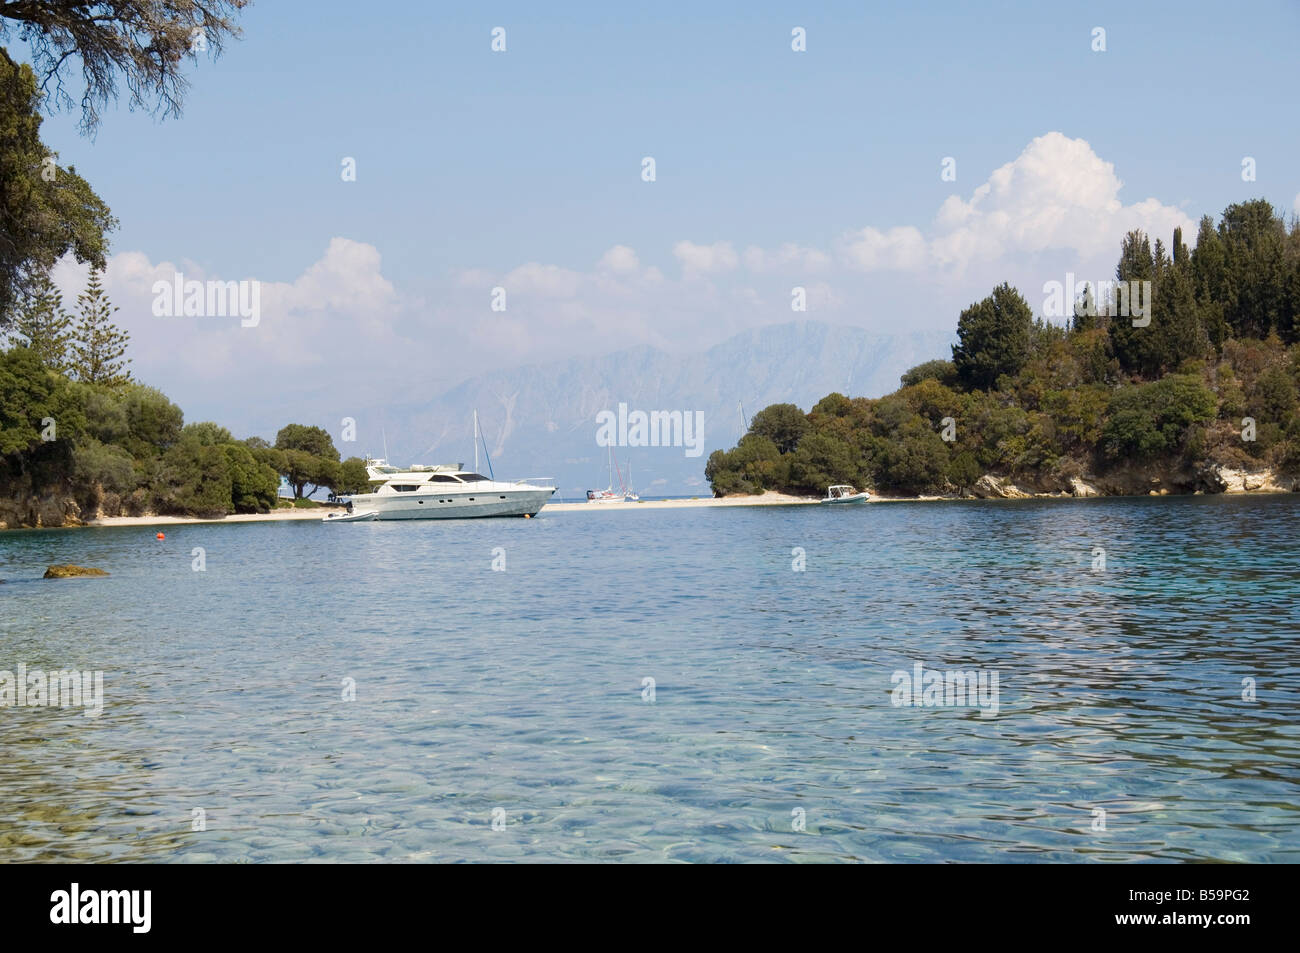 Isola di Skorpios di proprietà della famiglia Onassis, vicino a Lefkada (Lefkas), Isole Ionie, isole greche, Grecia, Europa Foto Stock